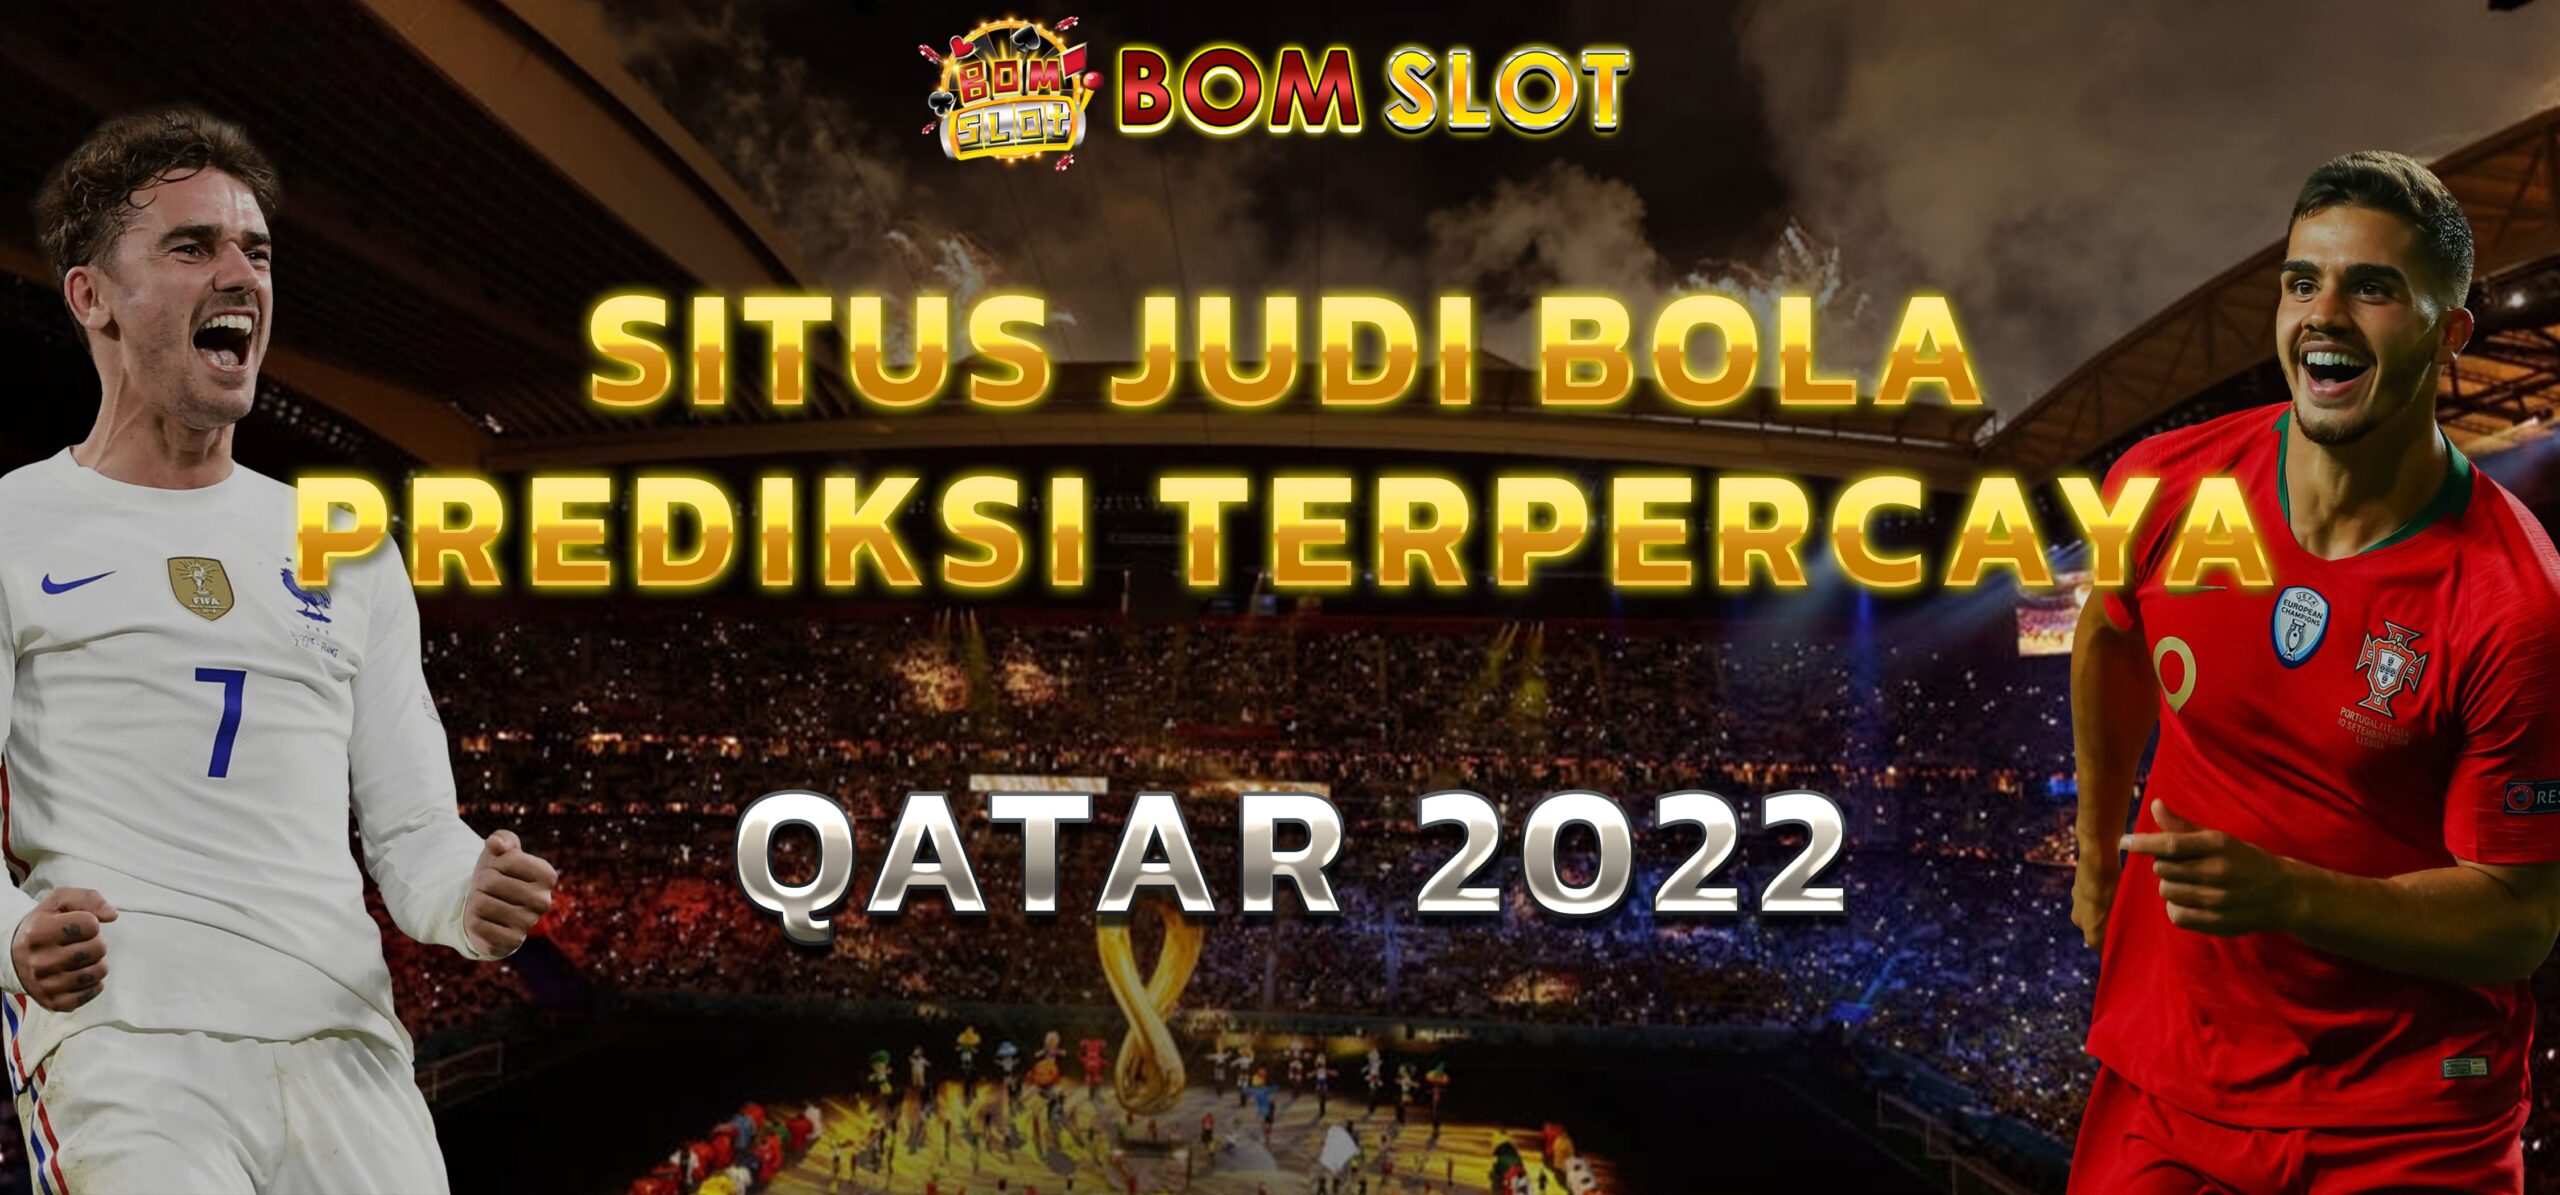 Situs Judi Bola Prediksi Terpercaya Qatar 2022